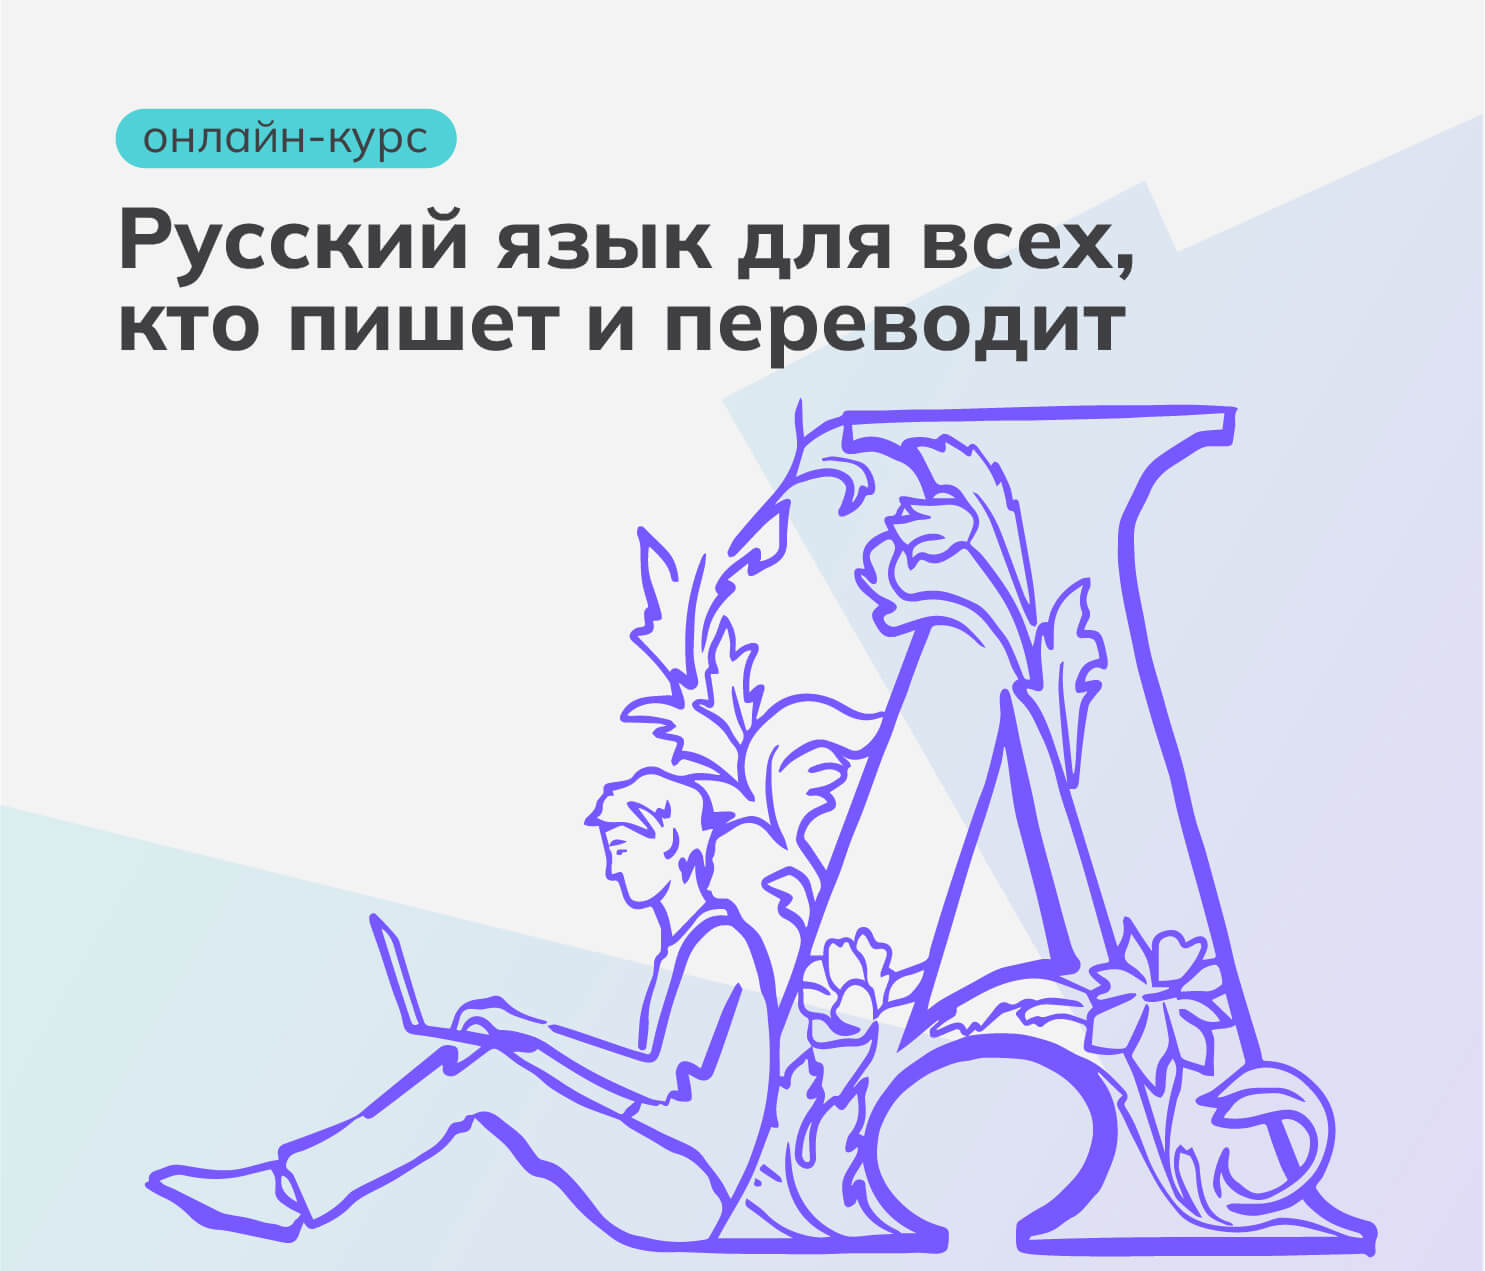 Русский язык для всех, кто пишет и переводит